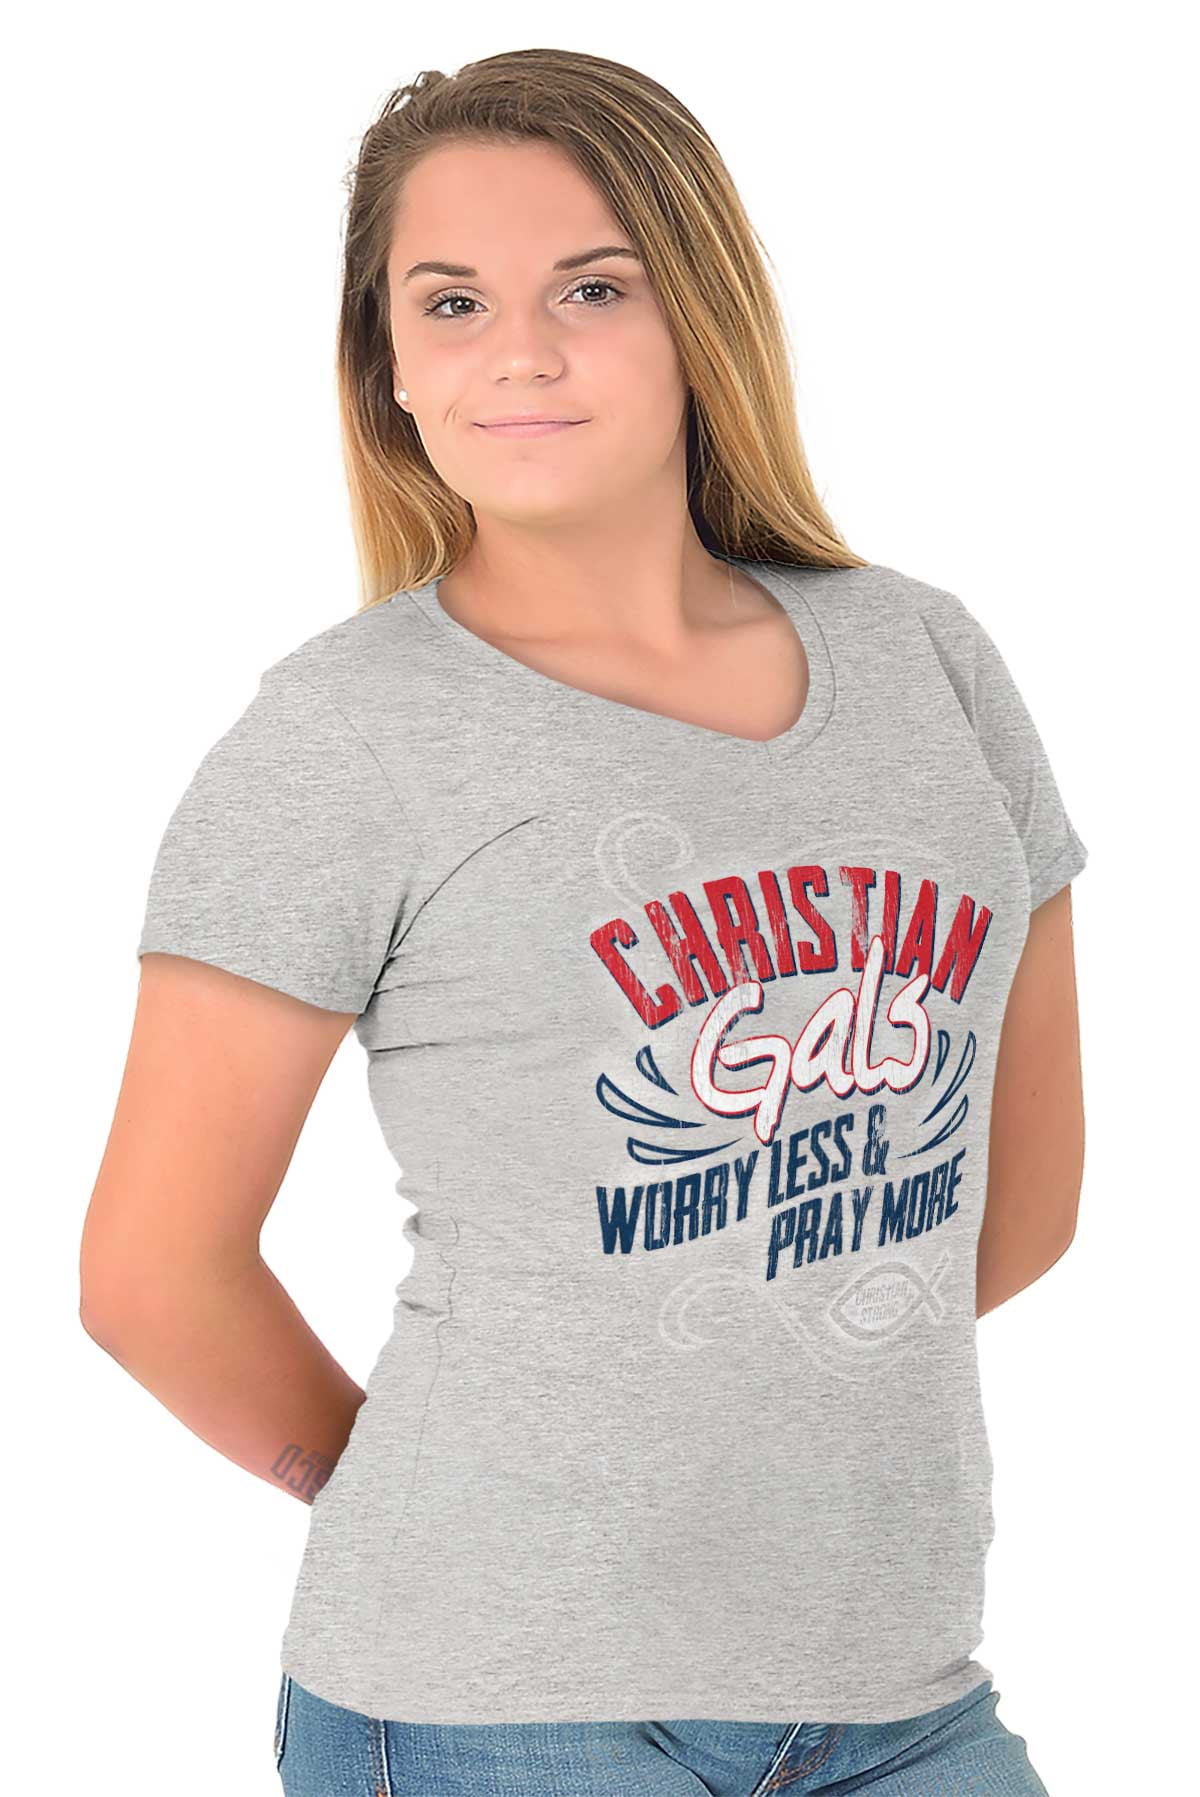 Jesus Strong Religious Cross Faith Mens Graphic V-Neck t-Shirt T-Shirt Men Women 